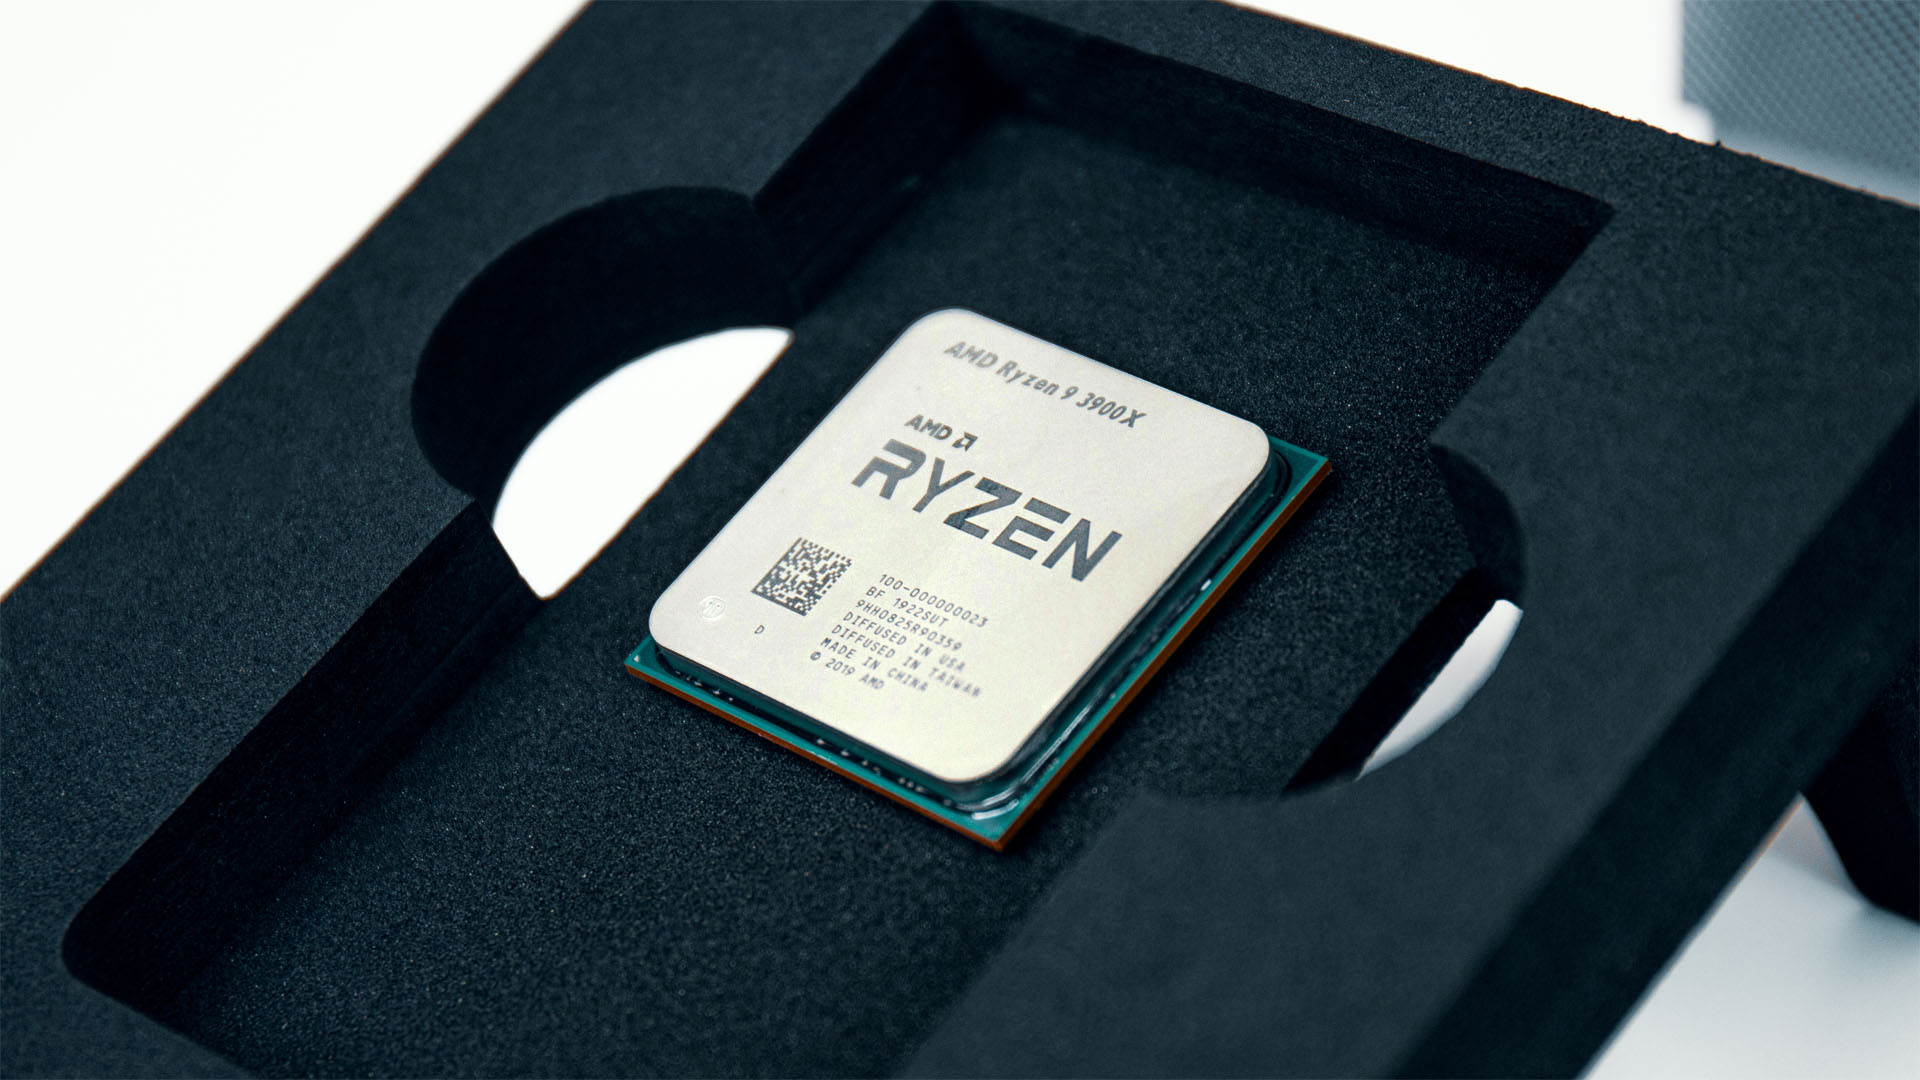 فقط 6 ٪ من وحدات المعالجة المركزية AMD Ryzen 9 3900X قادرة على 4.2 جيجا هرتز في اختبار اليانصيب السيليكون